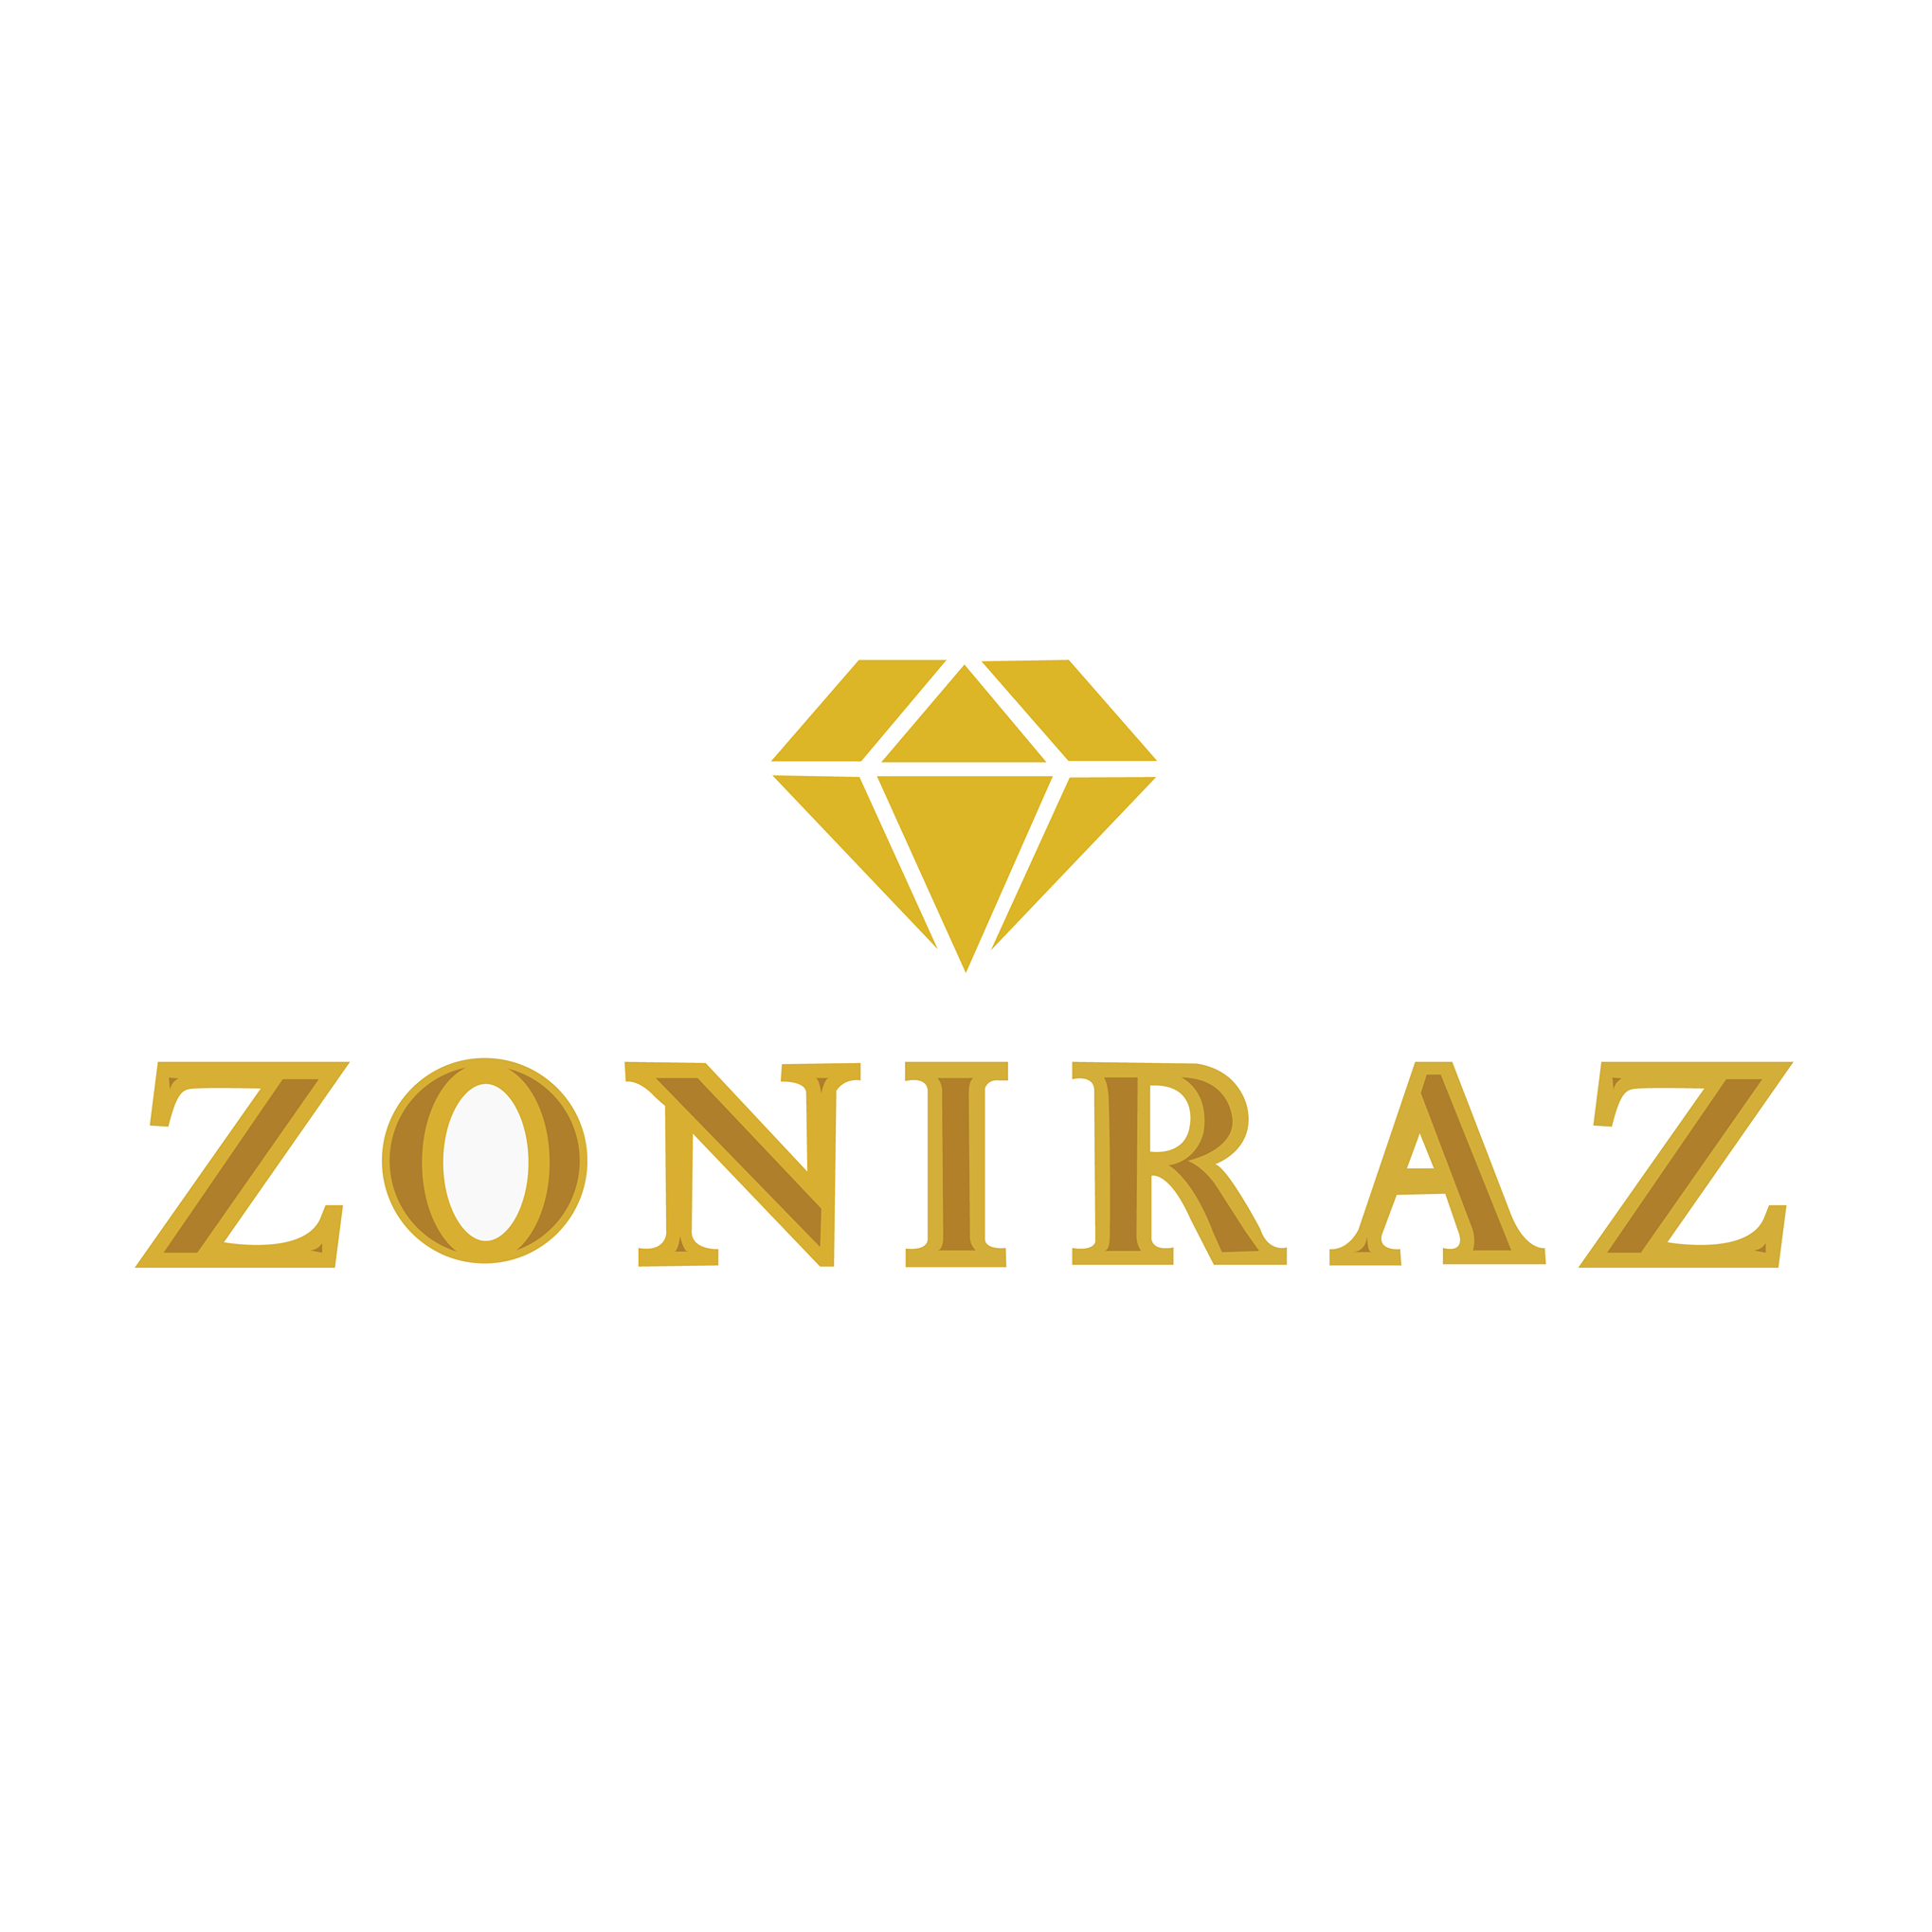 Zoniraz